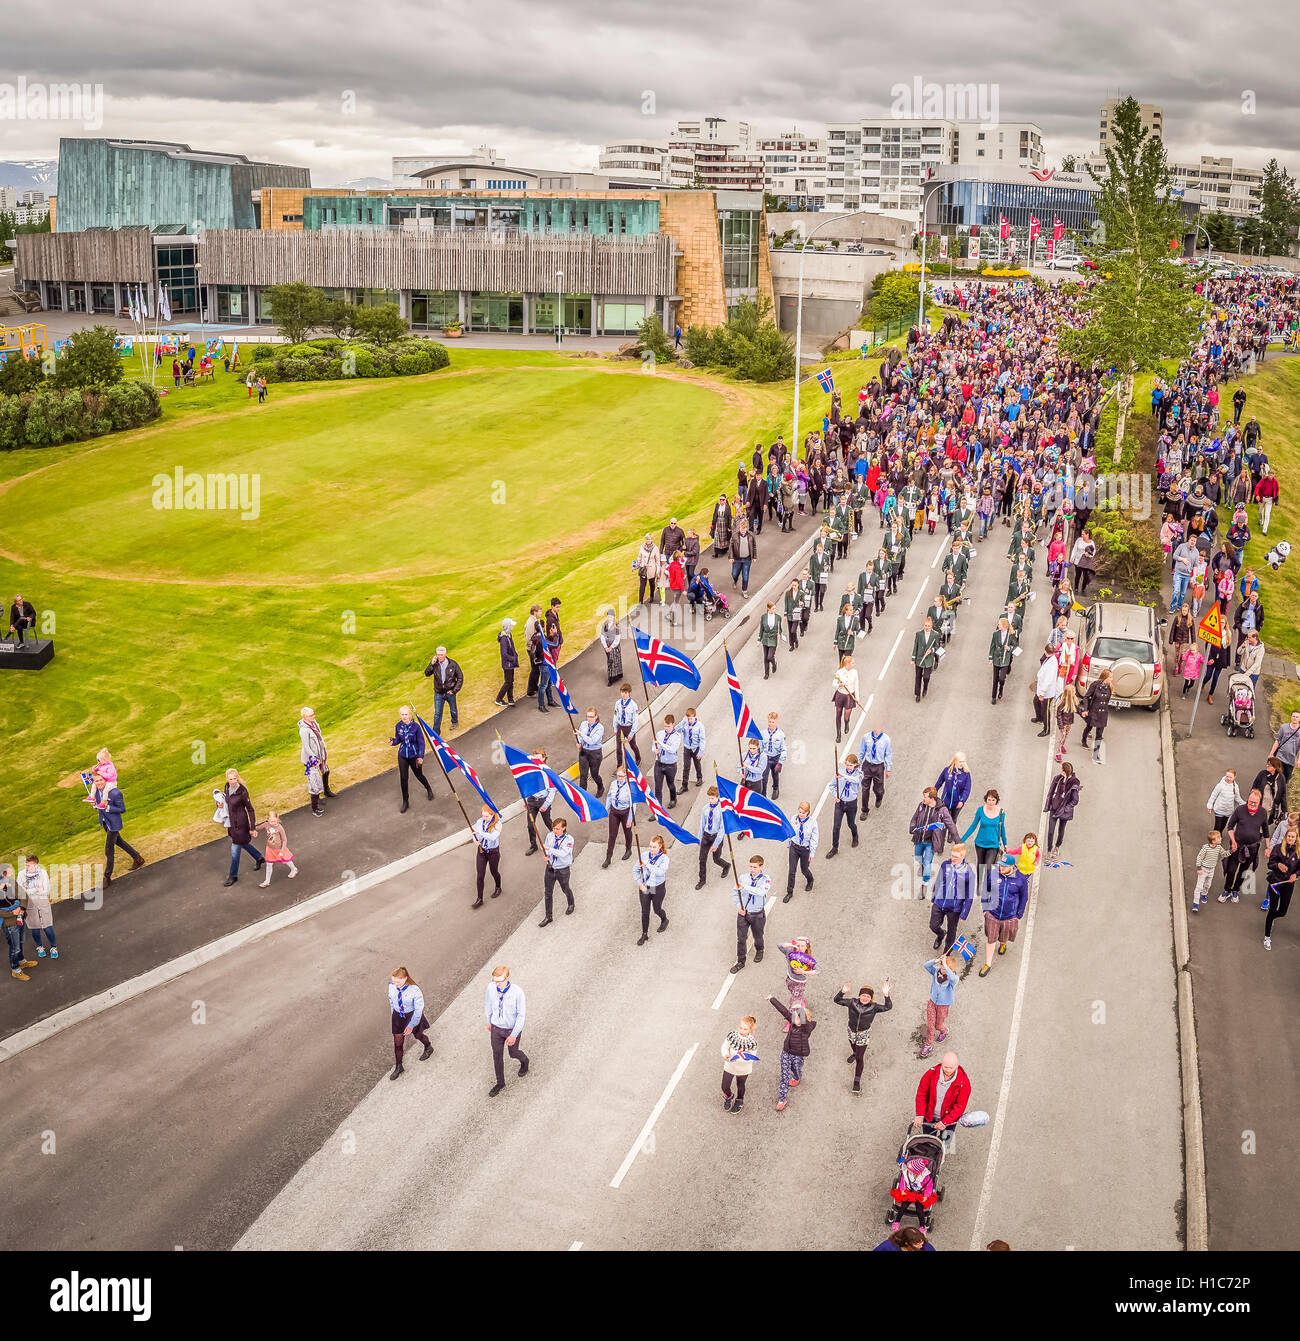 Celebración del Día de la independencia en Kopavogur, un suburbio de la ciudad de Reykjavik, Islandia. Esta imagen está rodada con un zumbido. Foto de stock